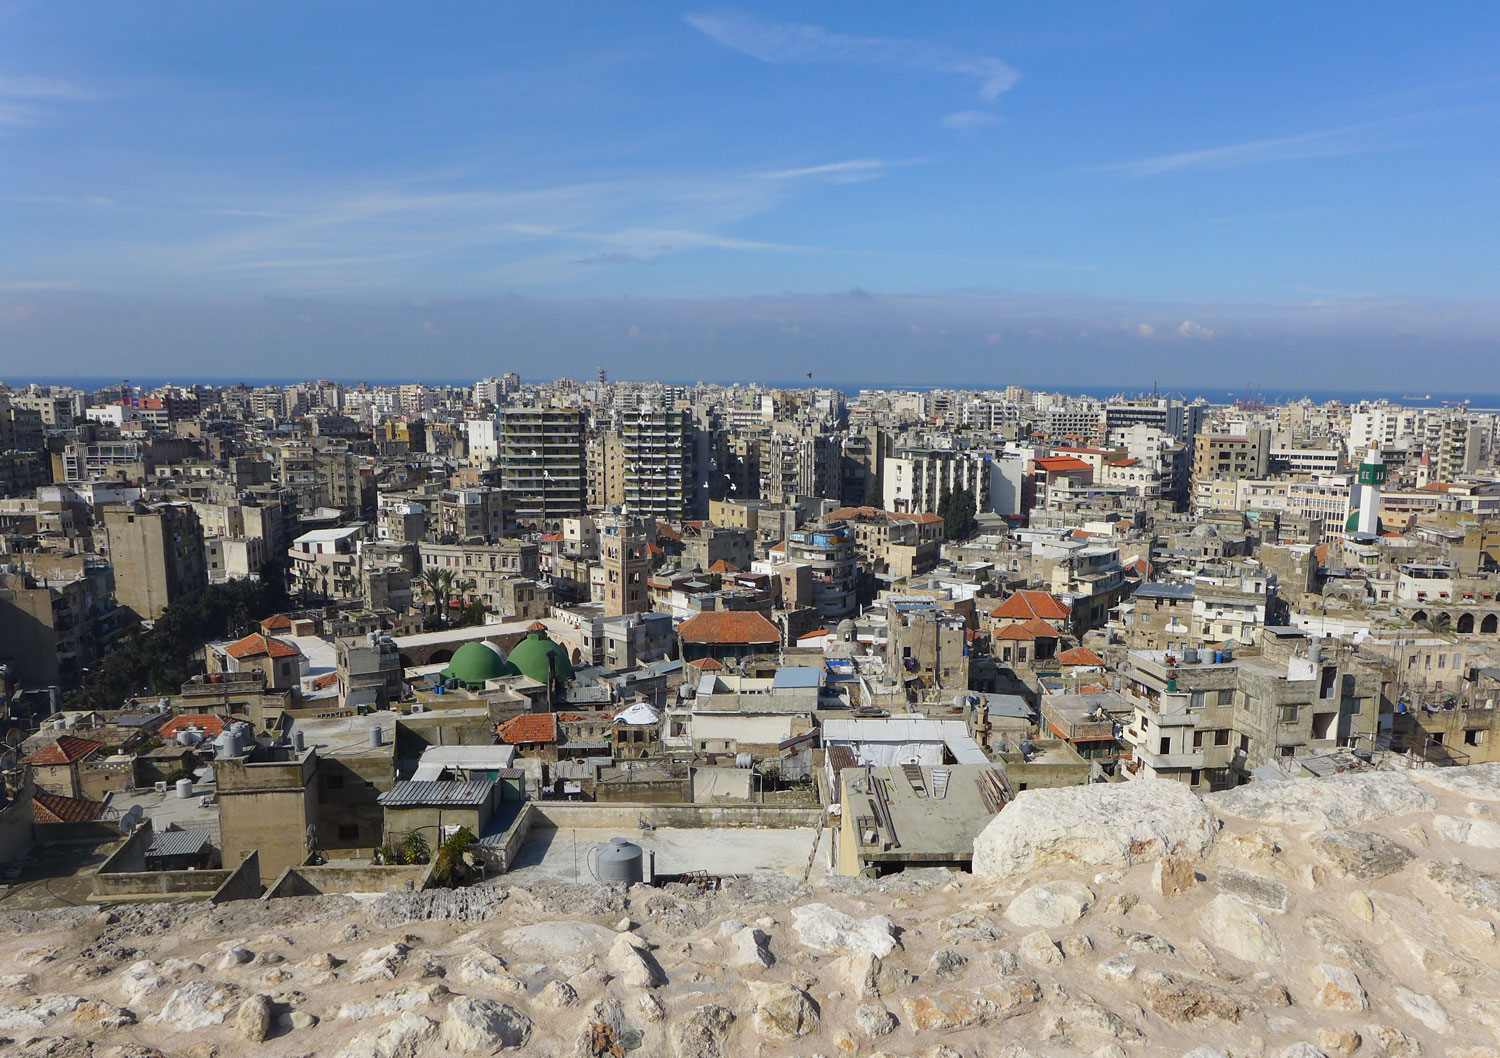 Plus loin, la ville nouvelle. À gauche, c’est la direction de Beyrouth. À droite, c’est la direction de la Syrie.